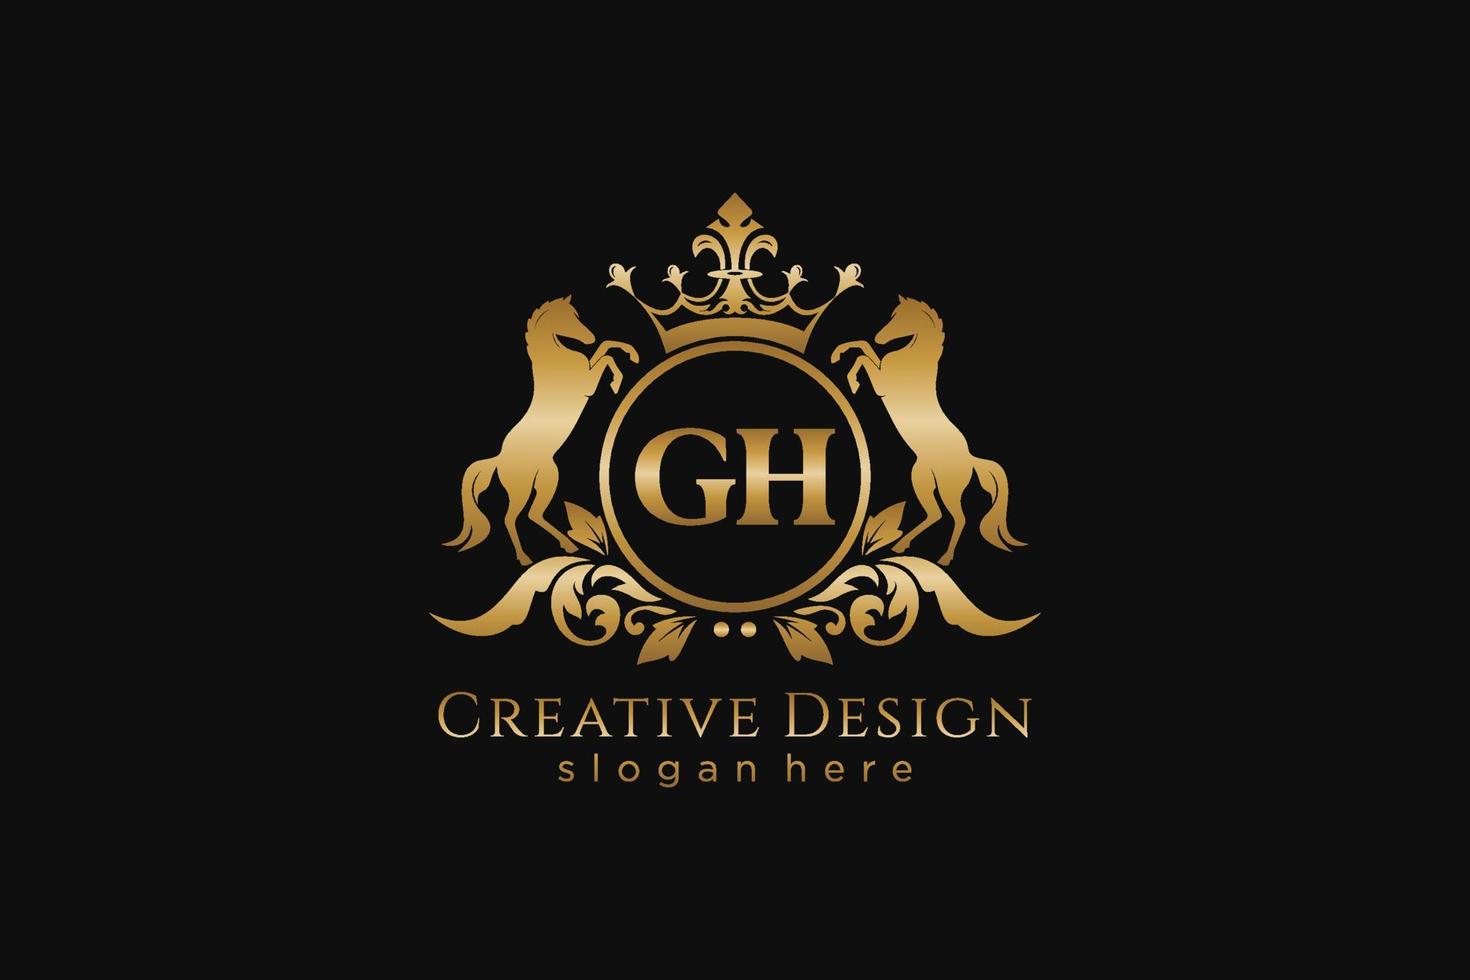 crista dourada retrô inicial gh com círculo e dois cavalos, modelo de crachá com pergaminhos e coroa real - perfeito para projetos de marca luxuosos vetor